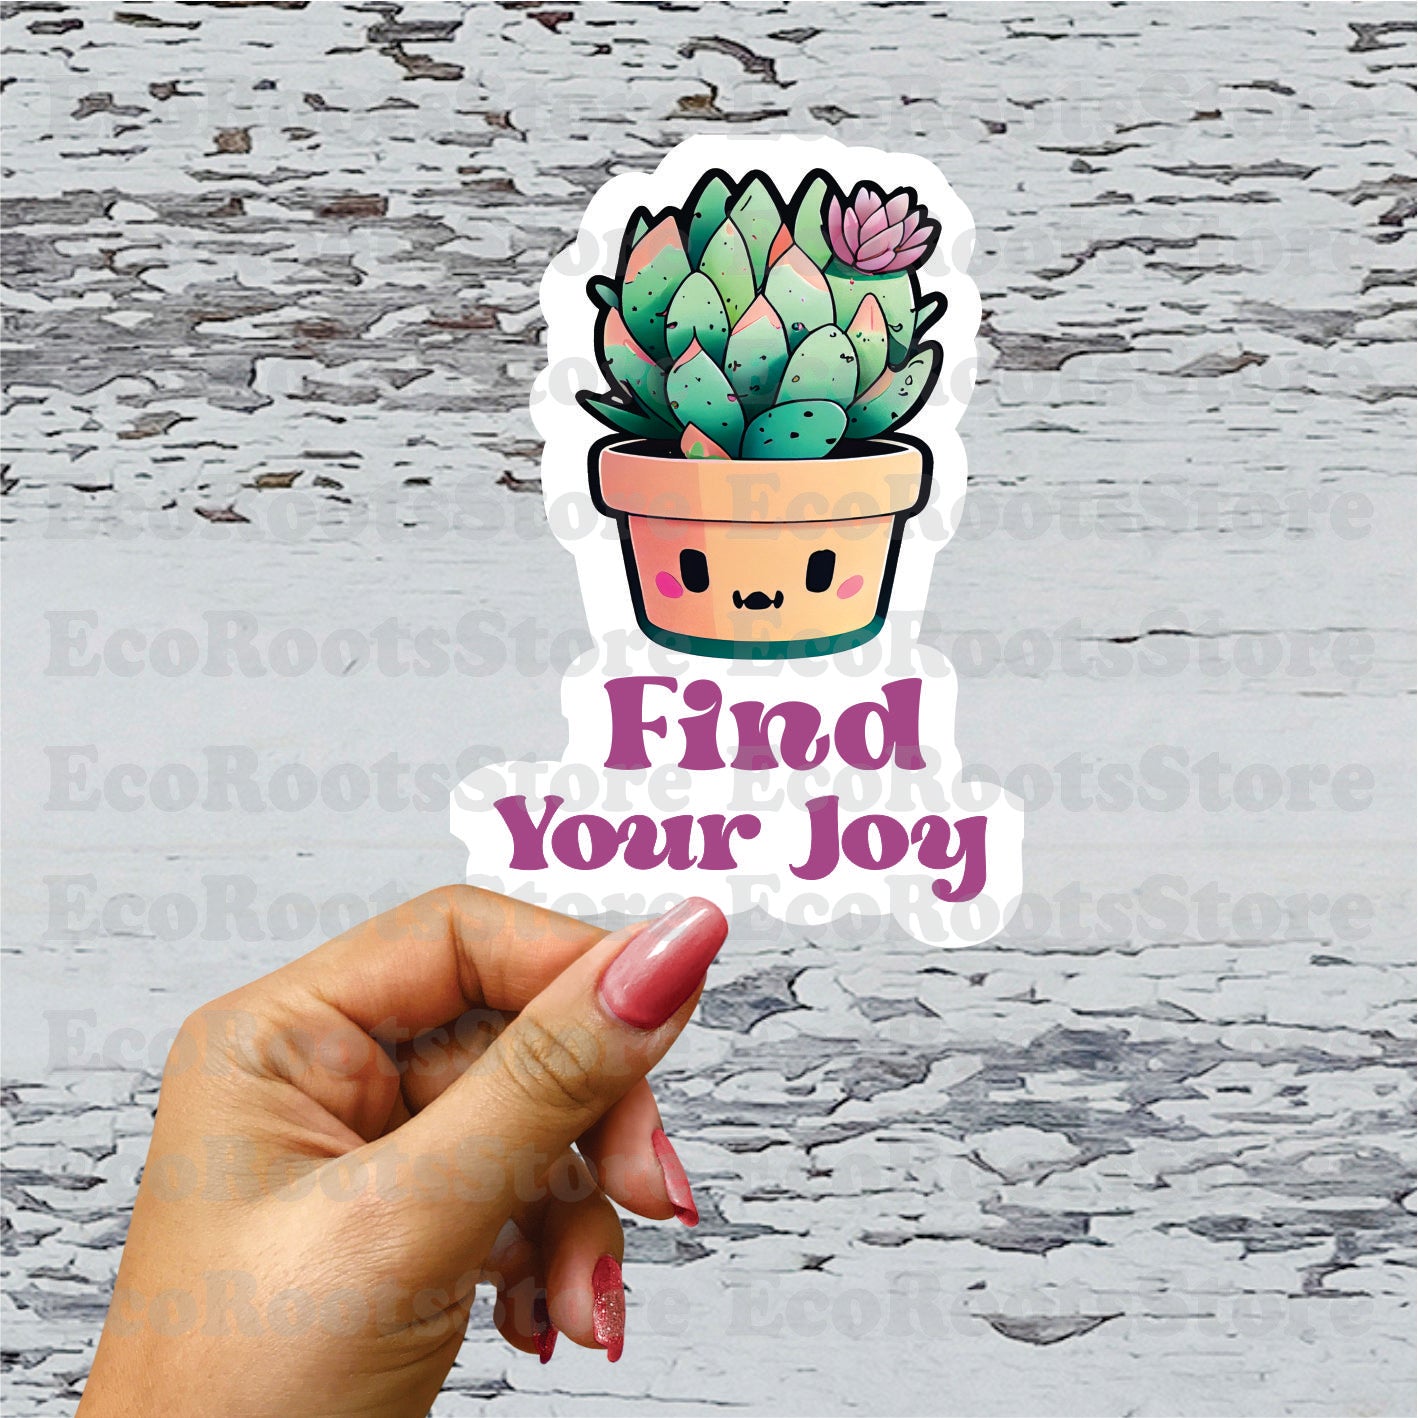 Find your joy Vinyl Sticker